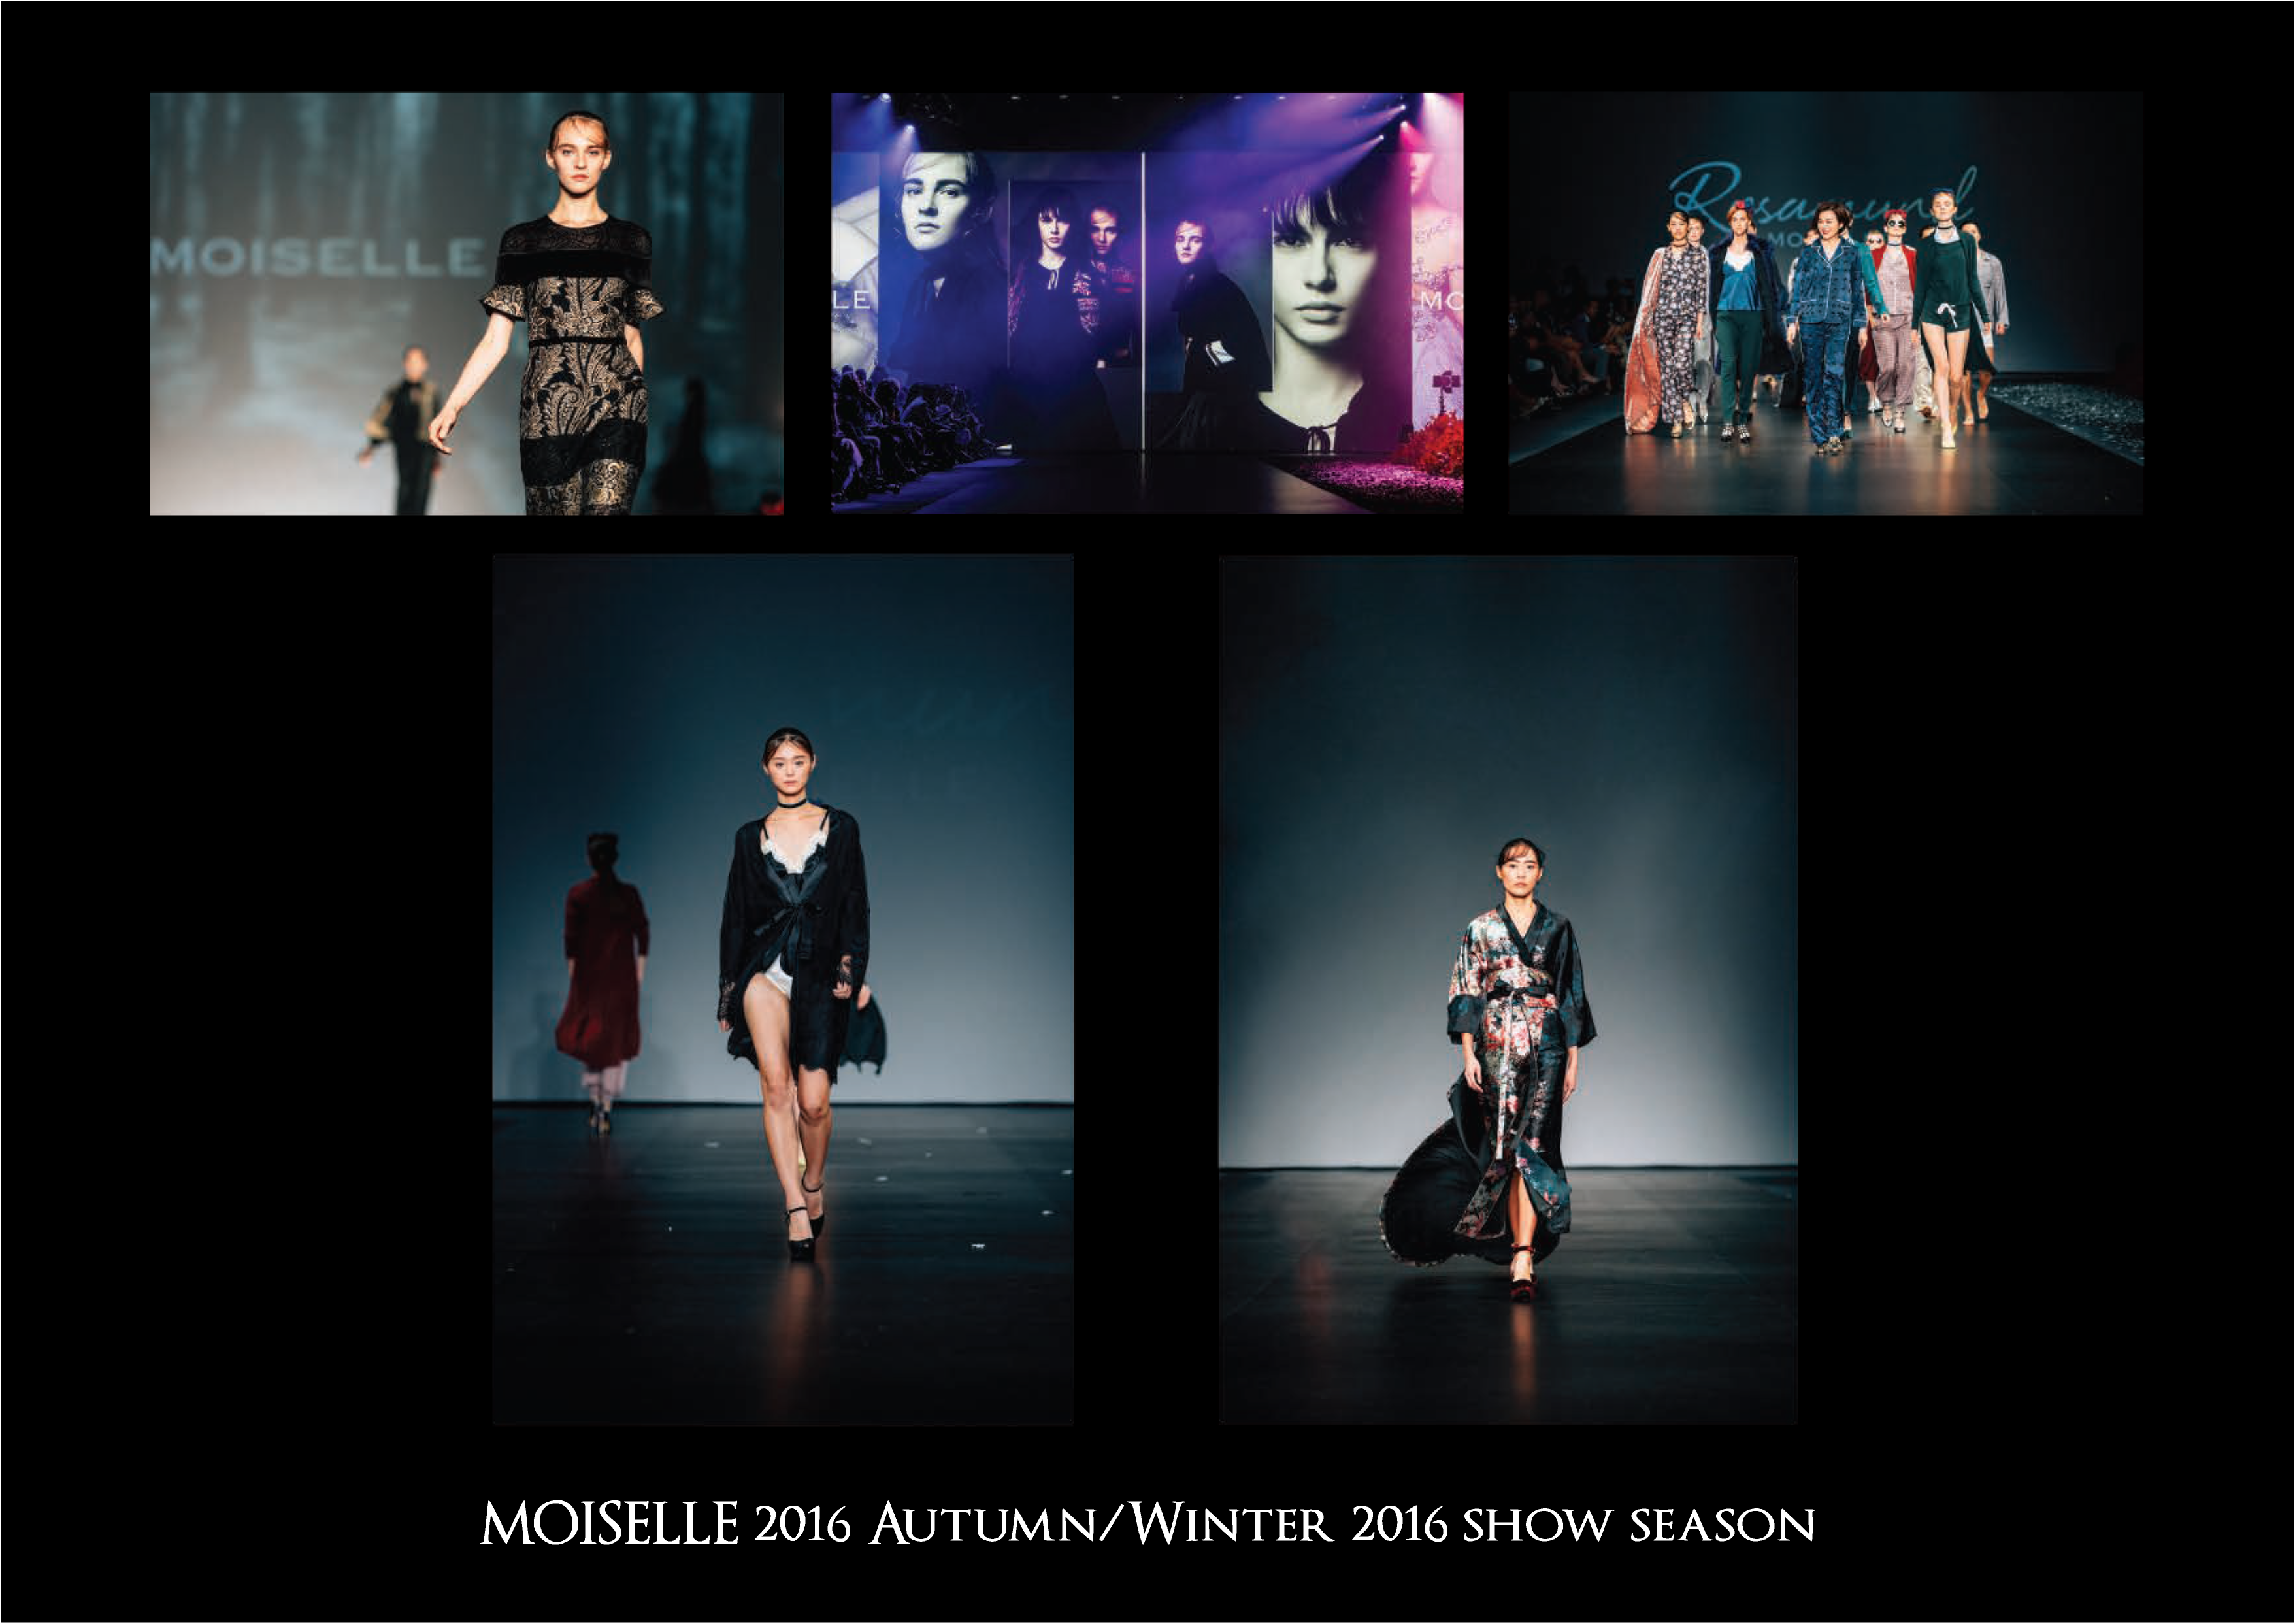 Matt HC Leung攝影師工作紀錄: MOISELLE 2016 Autumn/Winter 2016 Show Season